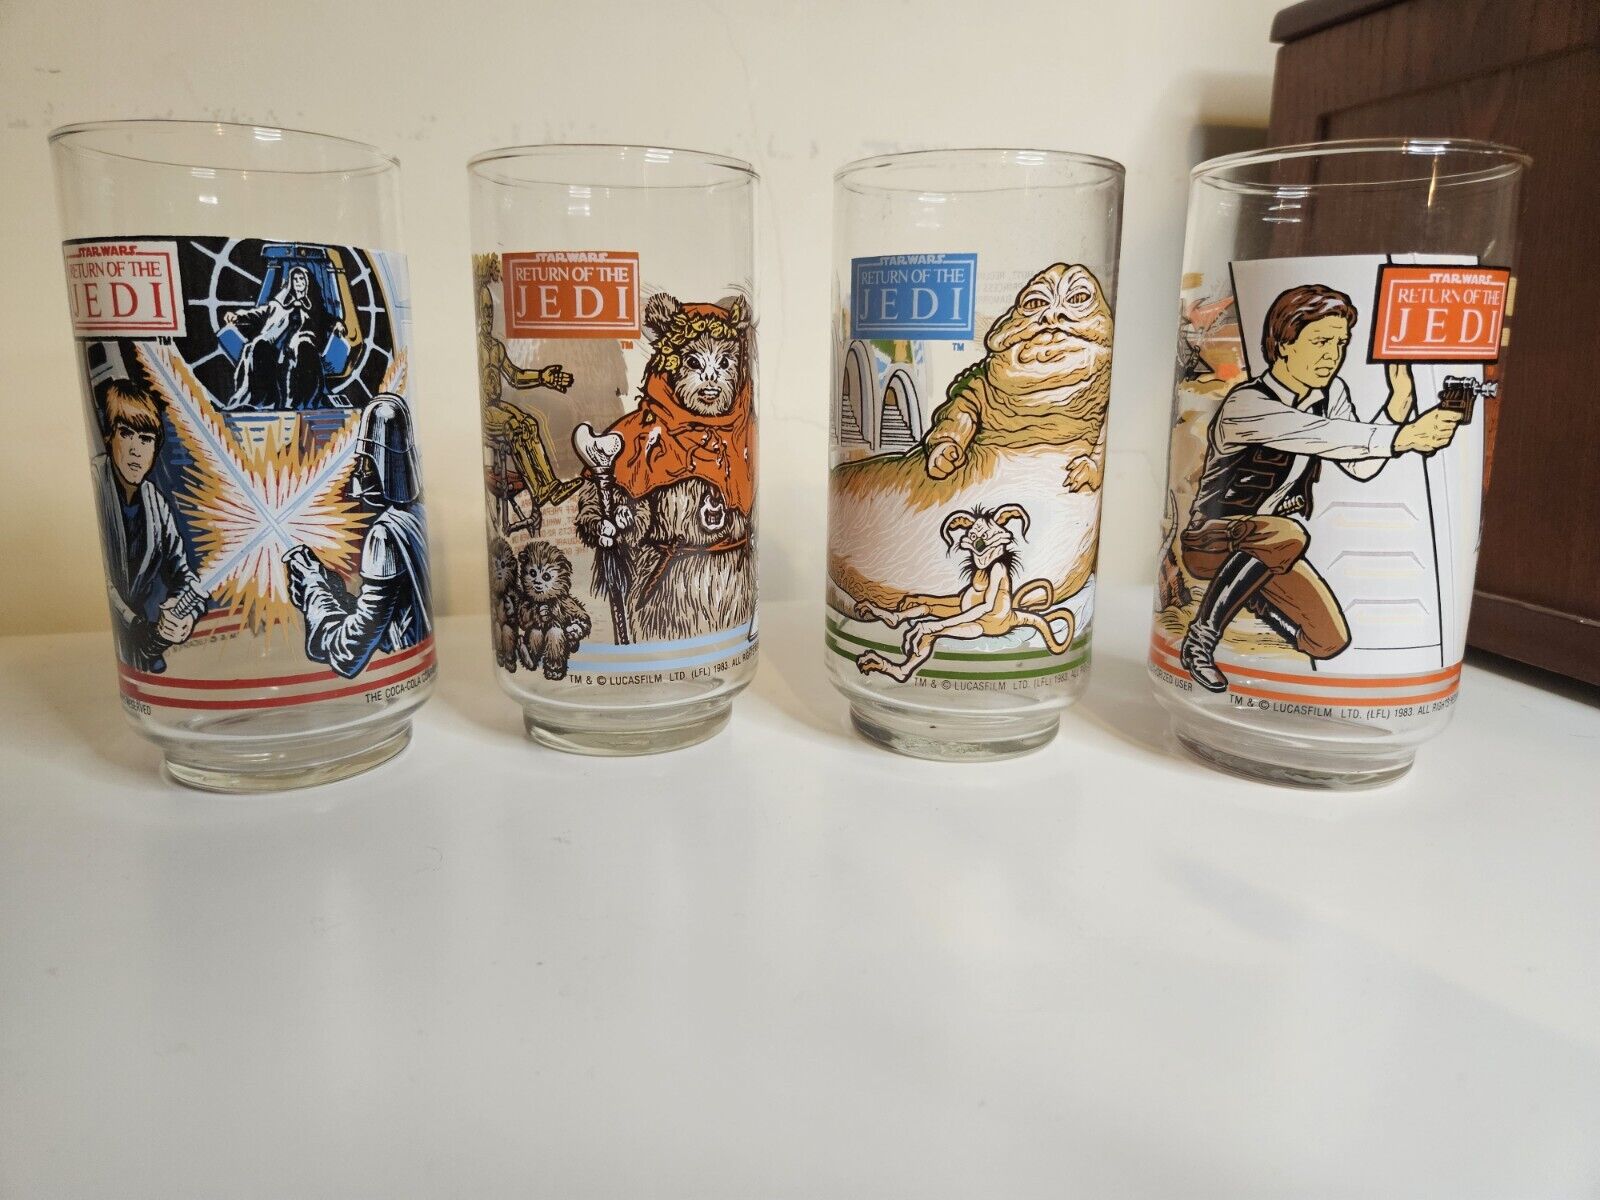 1983 Star Wars Return of the Jedi Burger King Glasses Complete Set of 4 